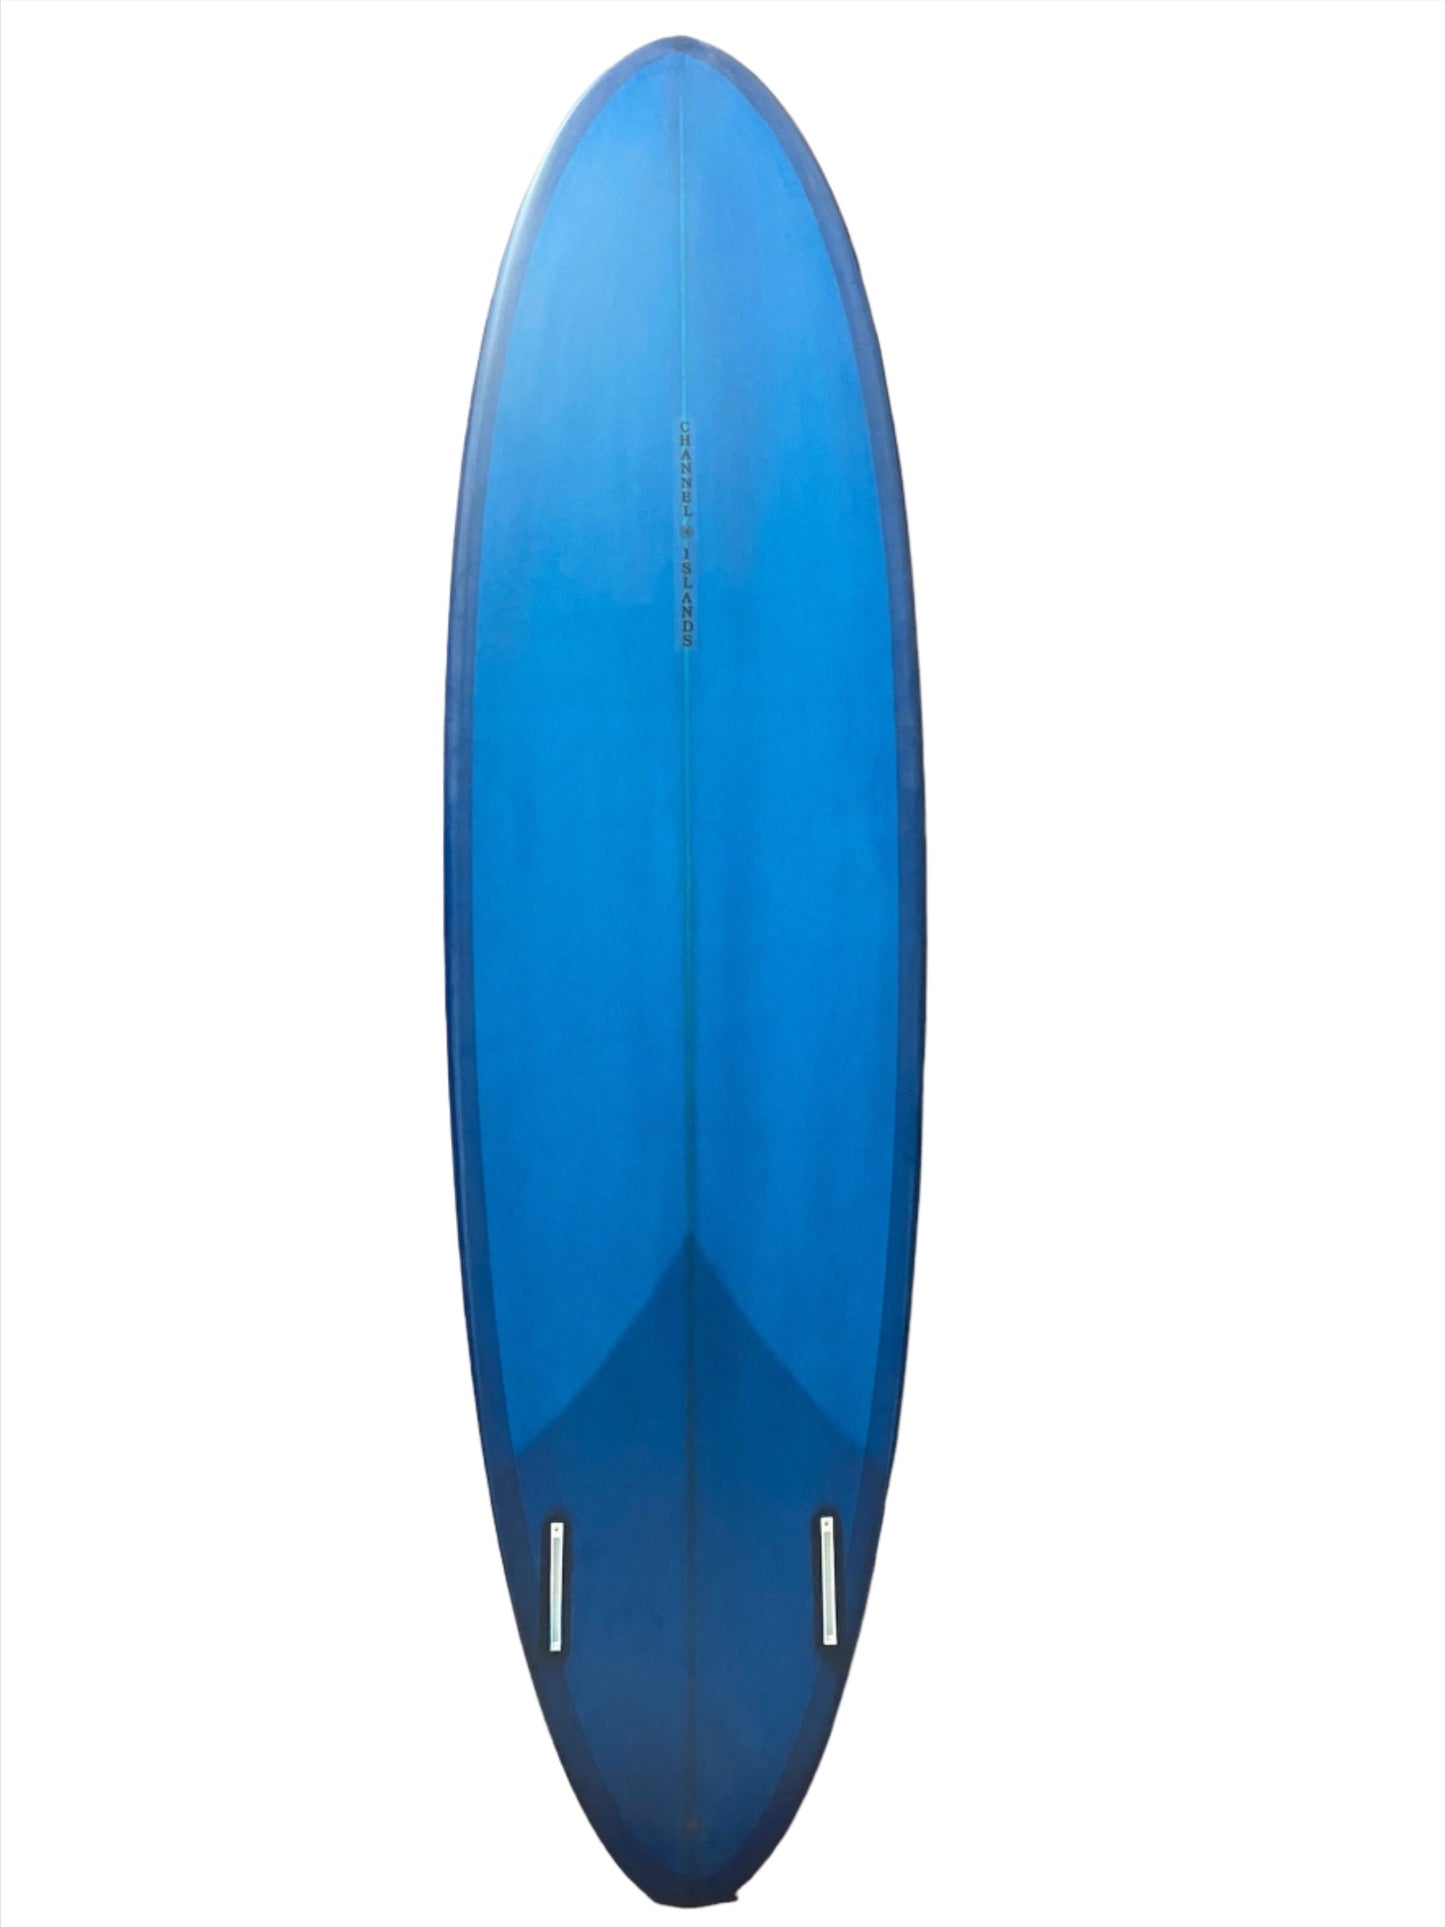 Channel Islands Mid Twin 7'1" Surfboard